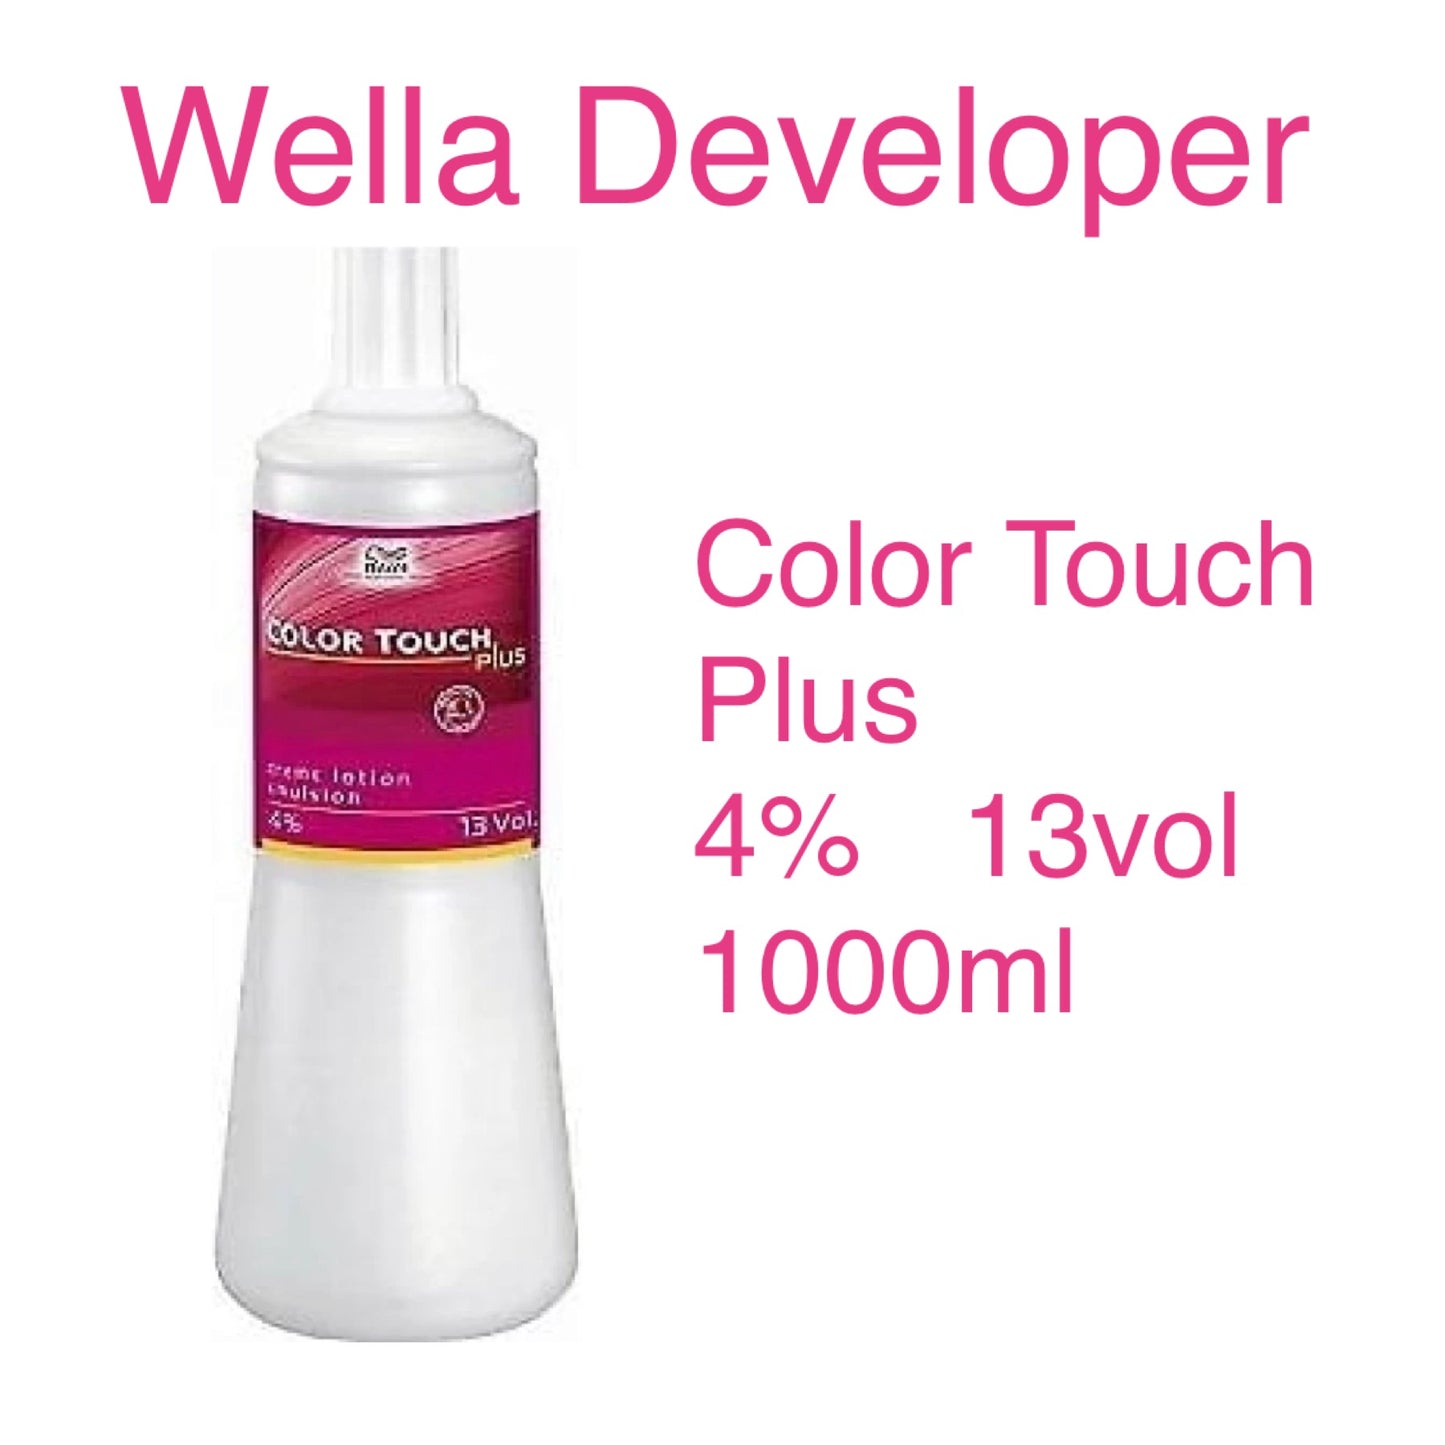 Wella Color Touch Developer 1000ml